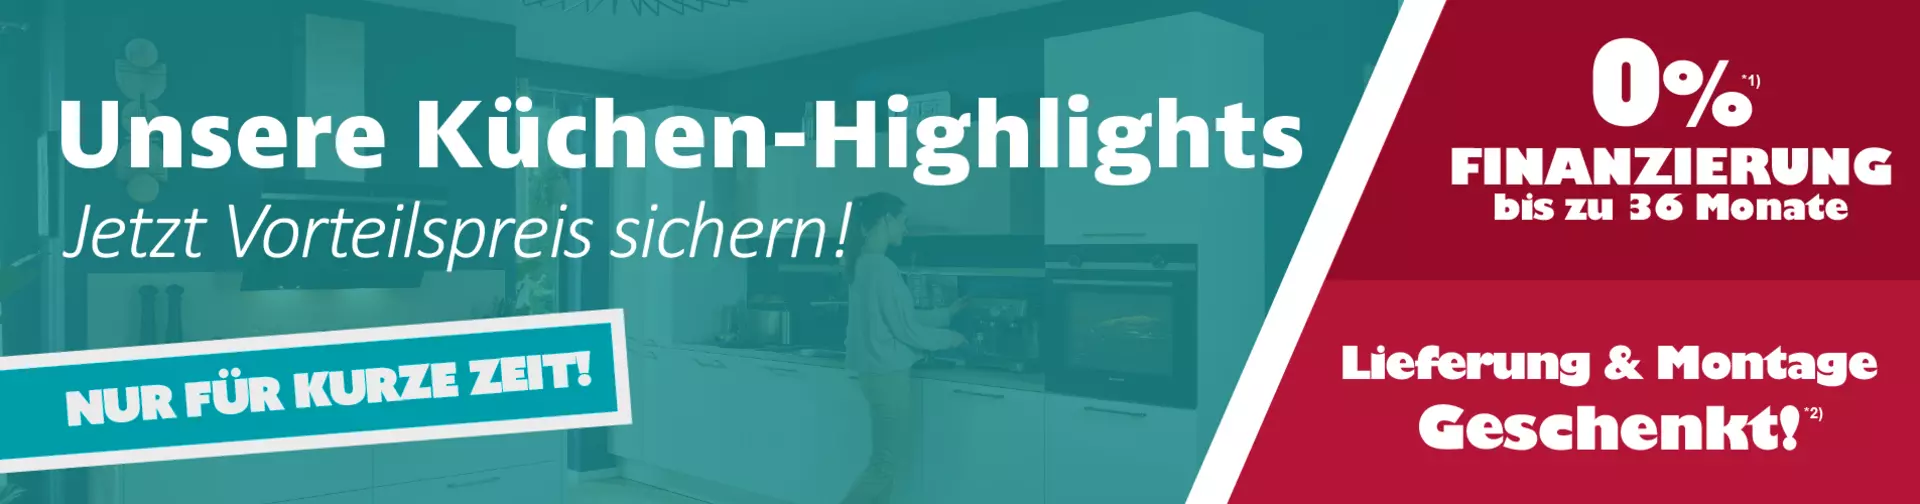 Unsere Küchen-Highlights - jetzt Vorteilspreis sichern! Nur für kurze Zeit bei Innovation Küche und Bad in Günzburg